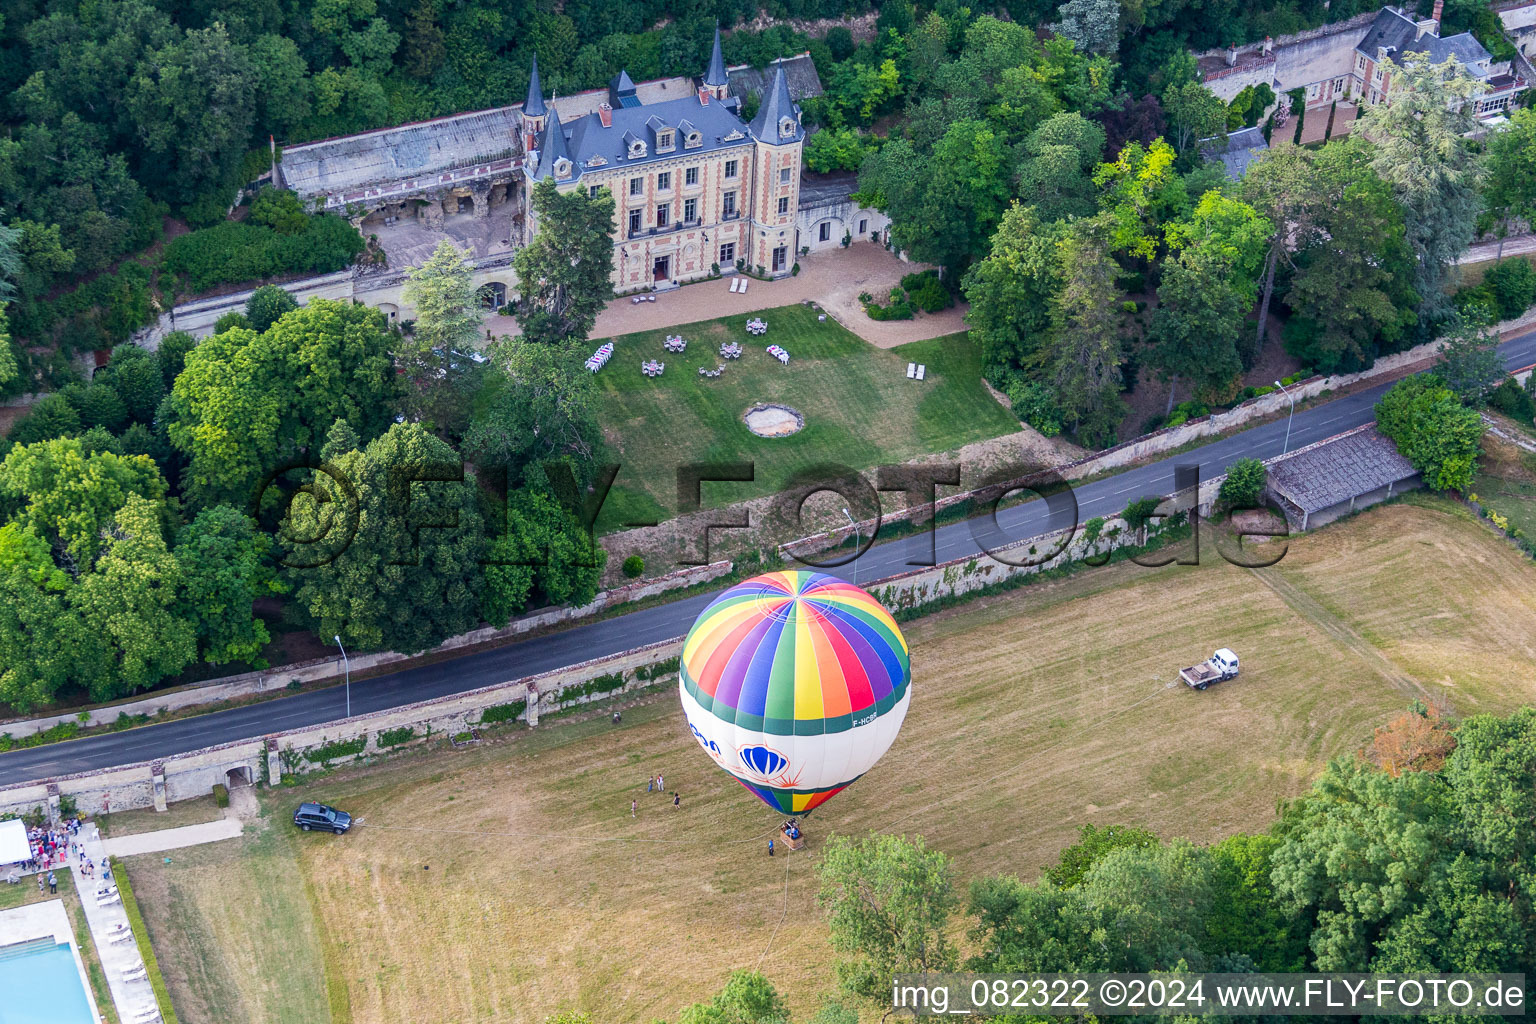 Heißluftballon Start am Château de Perreux in Fahrt über dem Luftraum in Nazelles-Négron in Centre-Val de Loire im Bundesland Indre-et-Loire, Frankreich